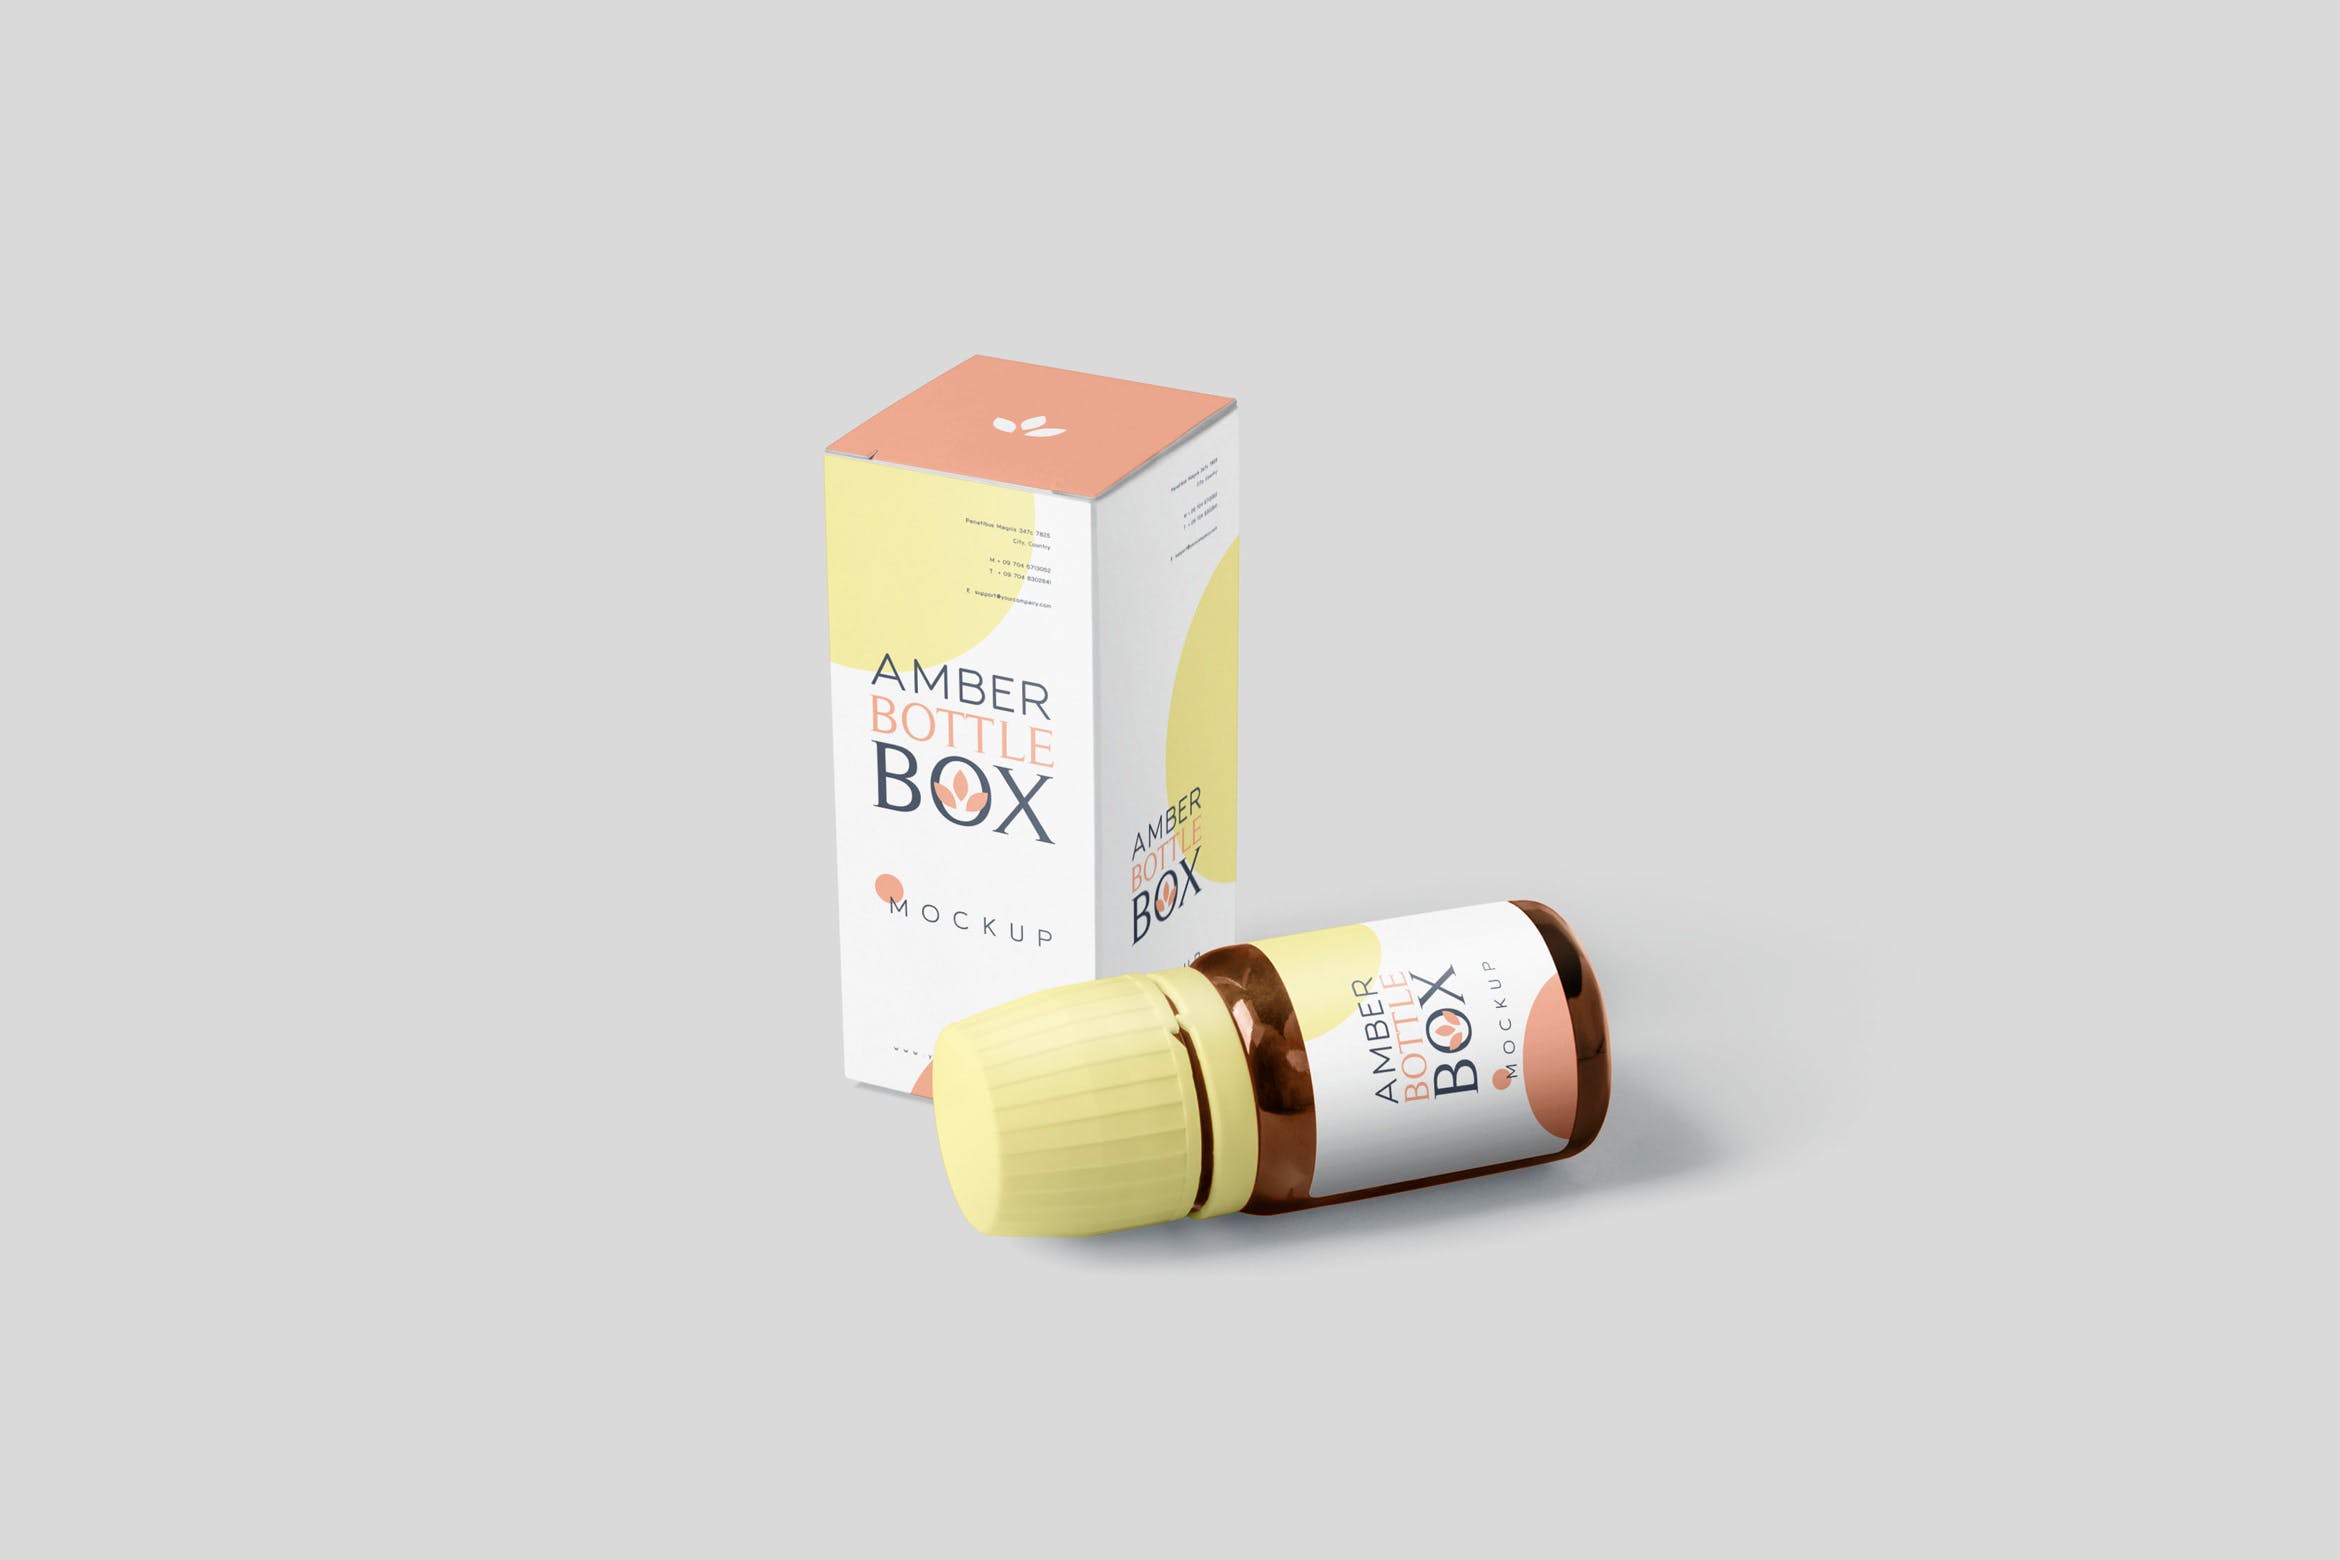 药物瓶&包装纸盒设计图16设计网精选模板 Amber Bottle Box Mockup Set插图